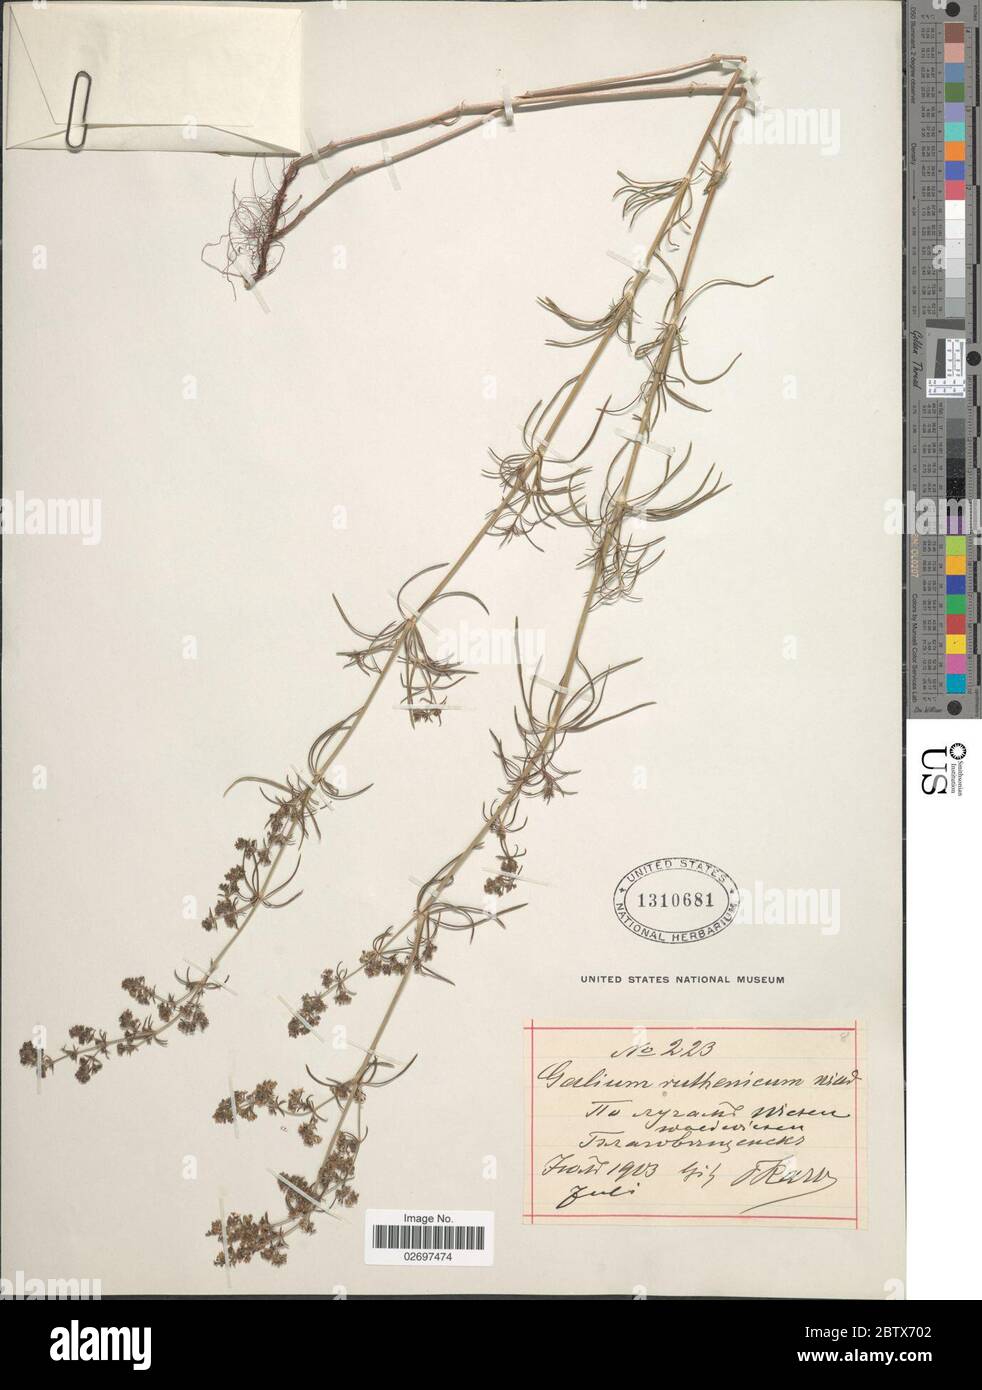 Galium ruthenicum Willd. Stock Photo